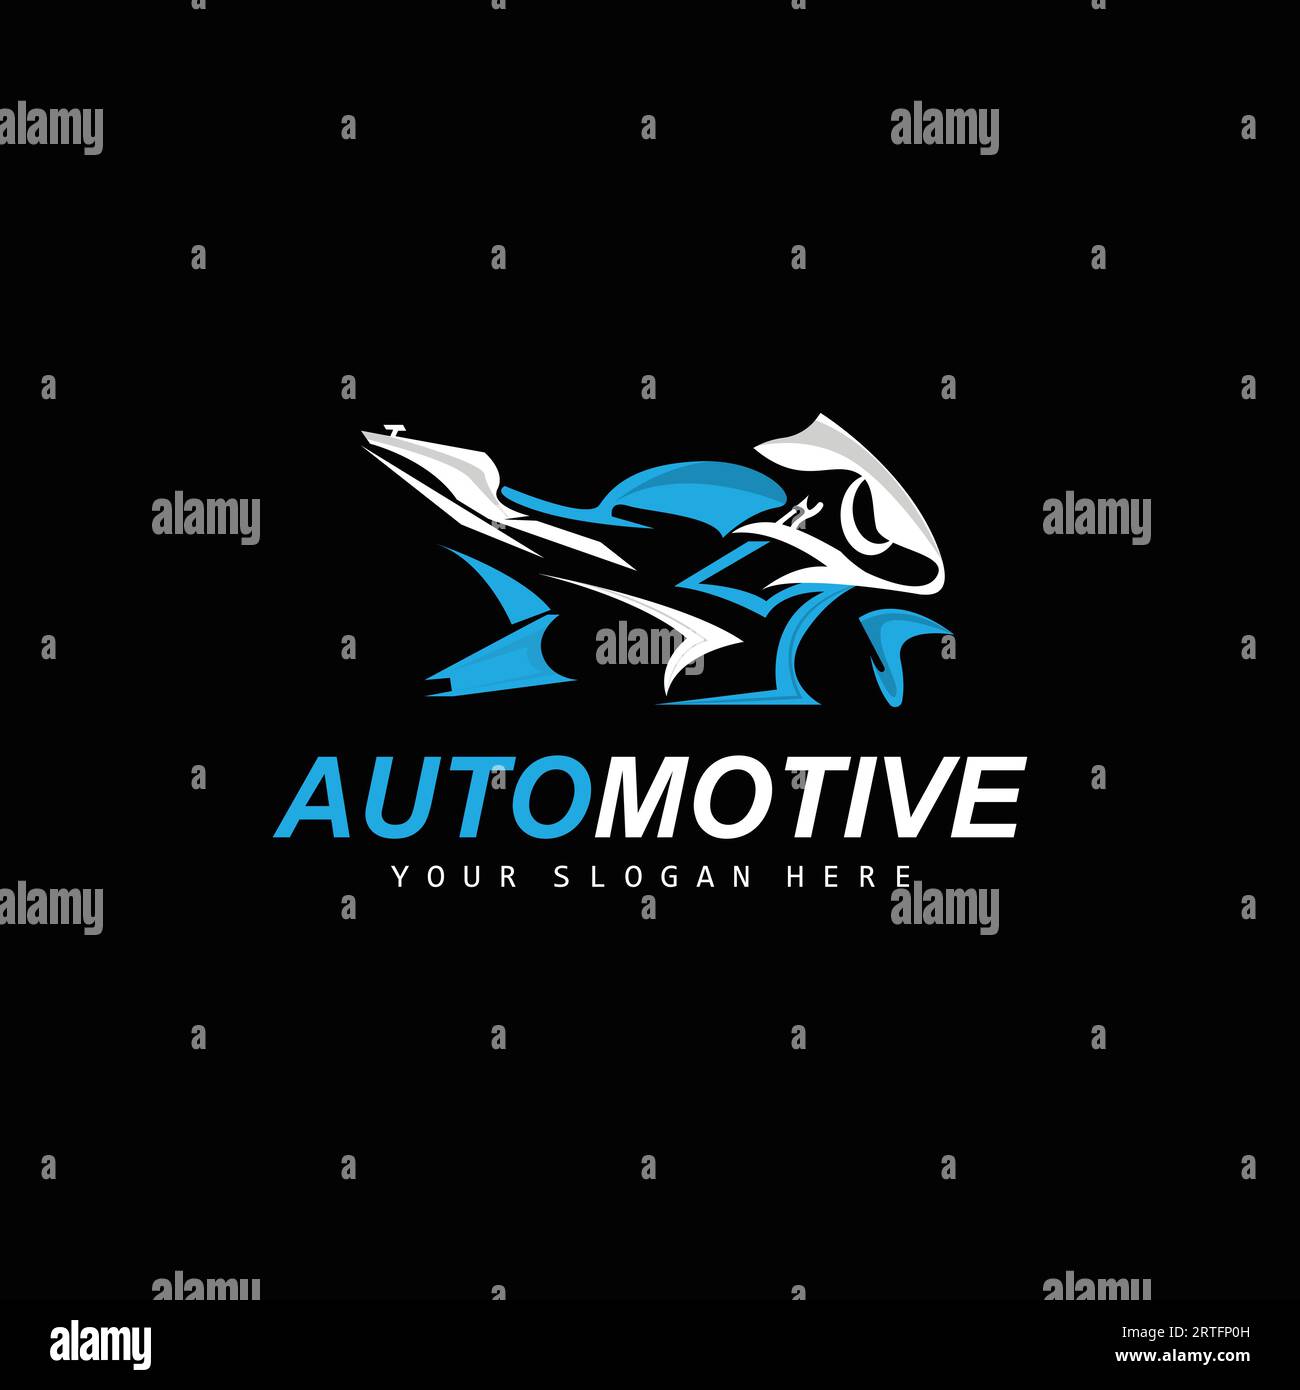 Logo de moto, vecteur de véhicule Motosport, conception pour, automobile, atelier de costume de moto, réparation de moto, marque de produit, MotoGP Illustration de Vecteur